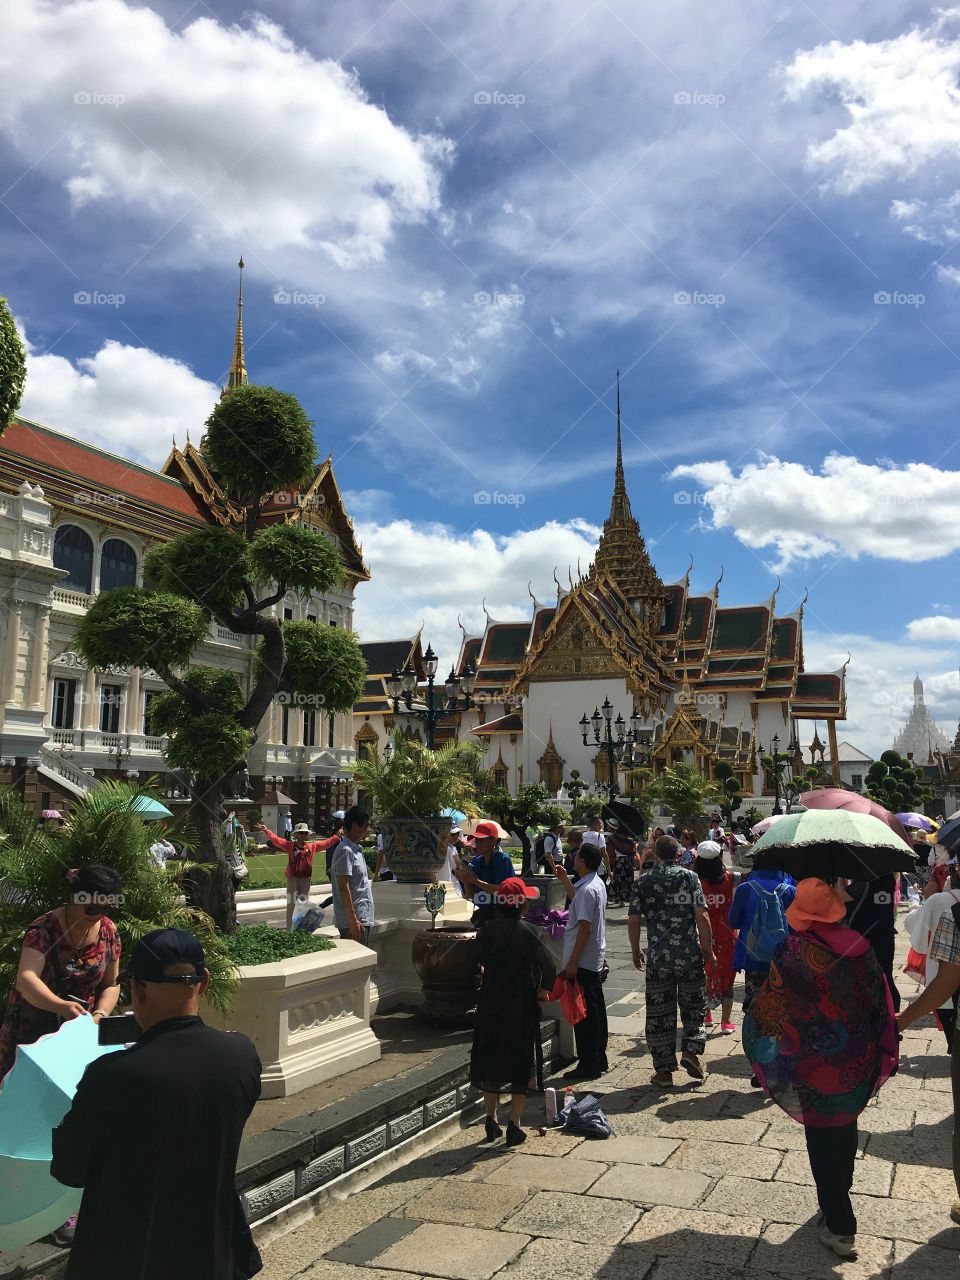 Grand Palace / Bangkok Thailand 84